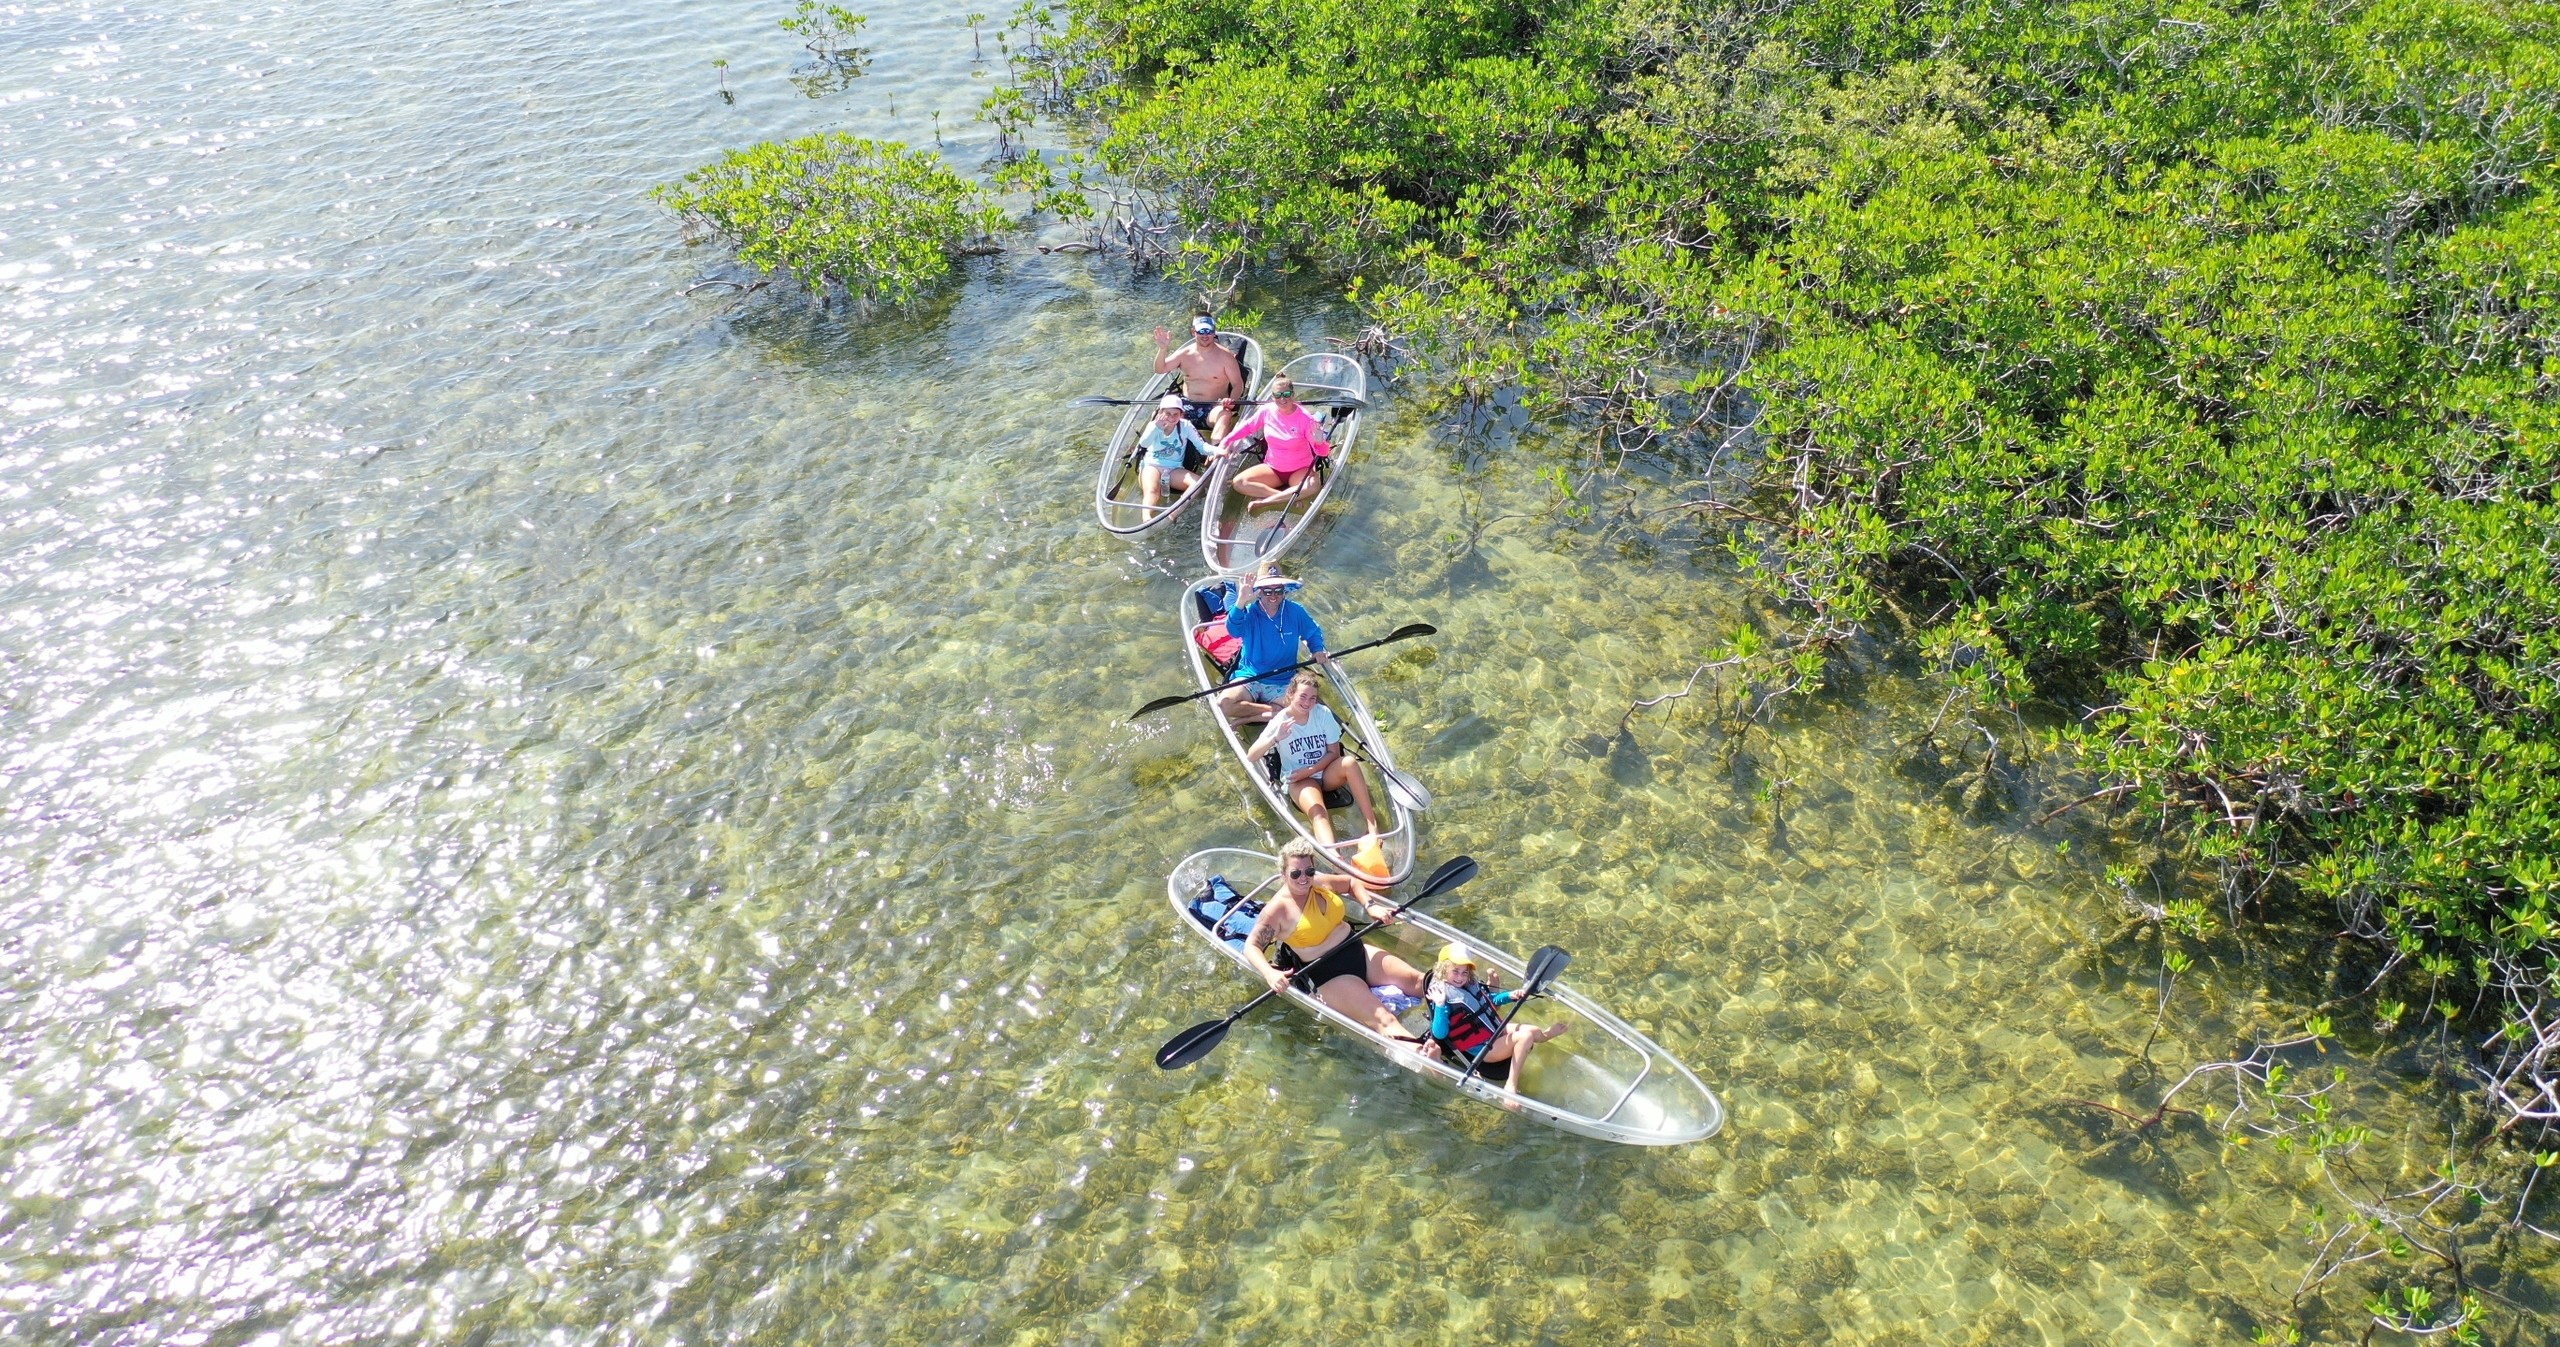 Clear Kayak Tour of Sugarloaf Key